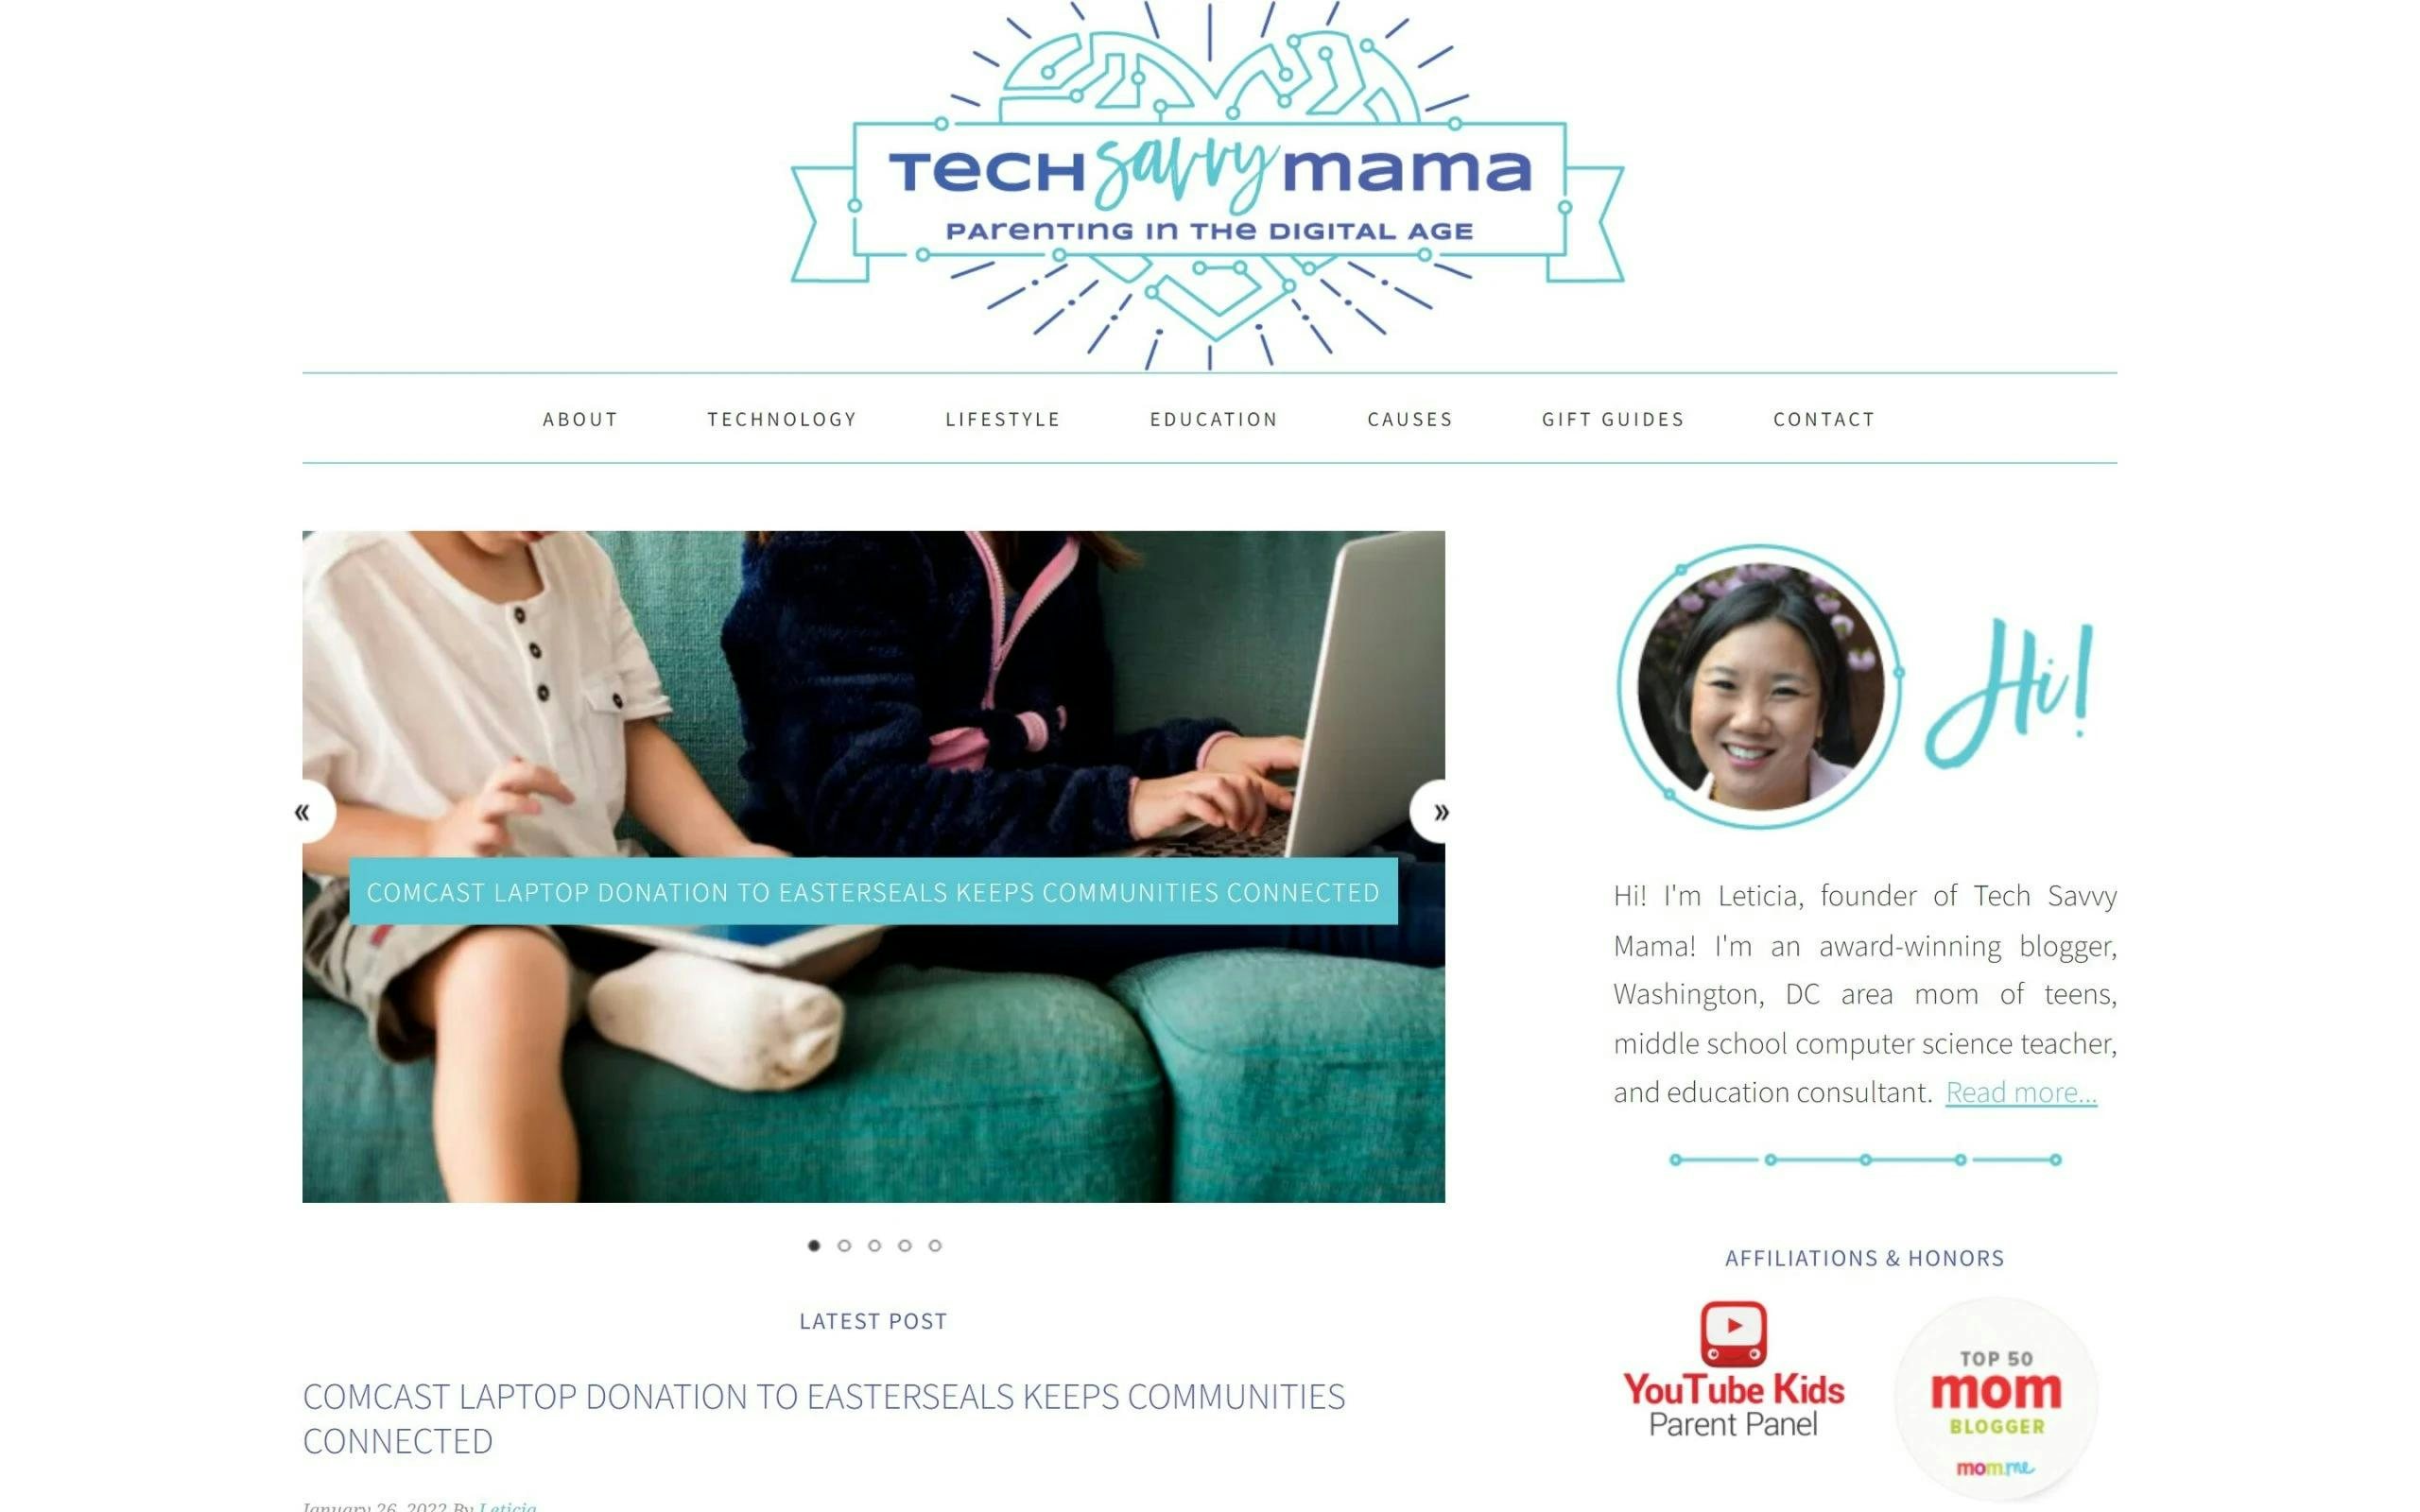 Tech Savvy Mama mom blogs